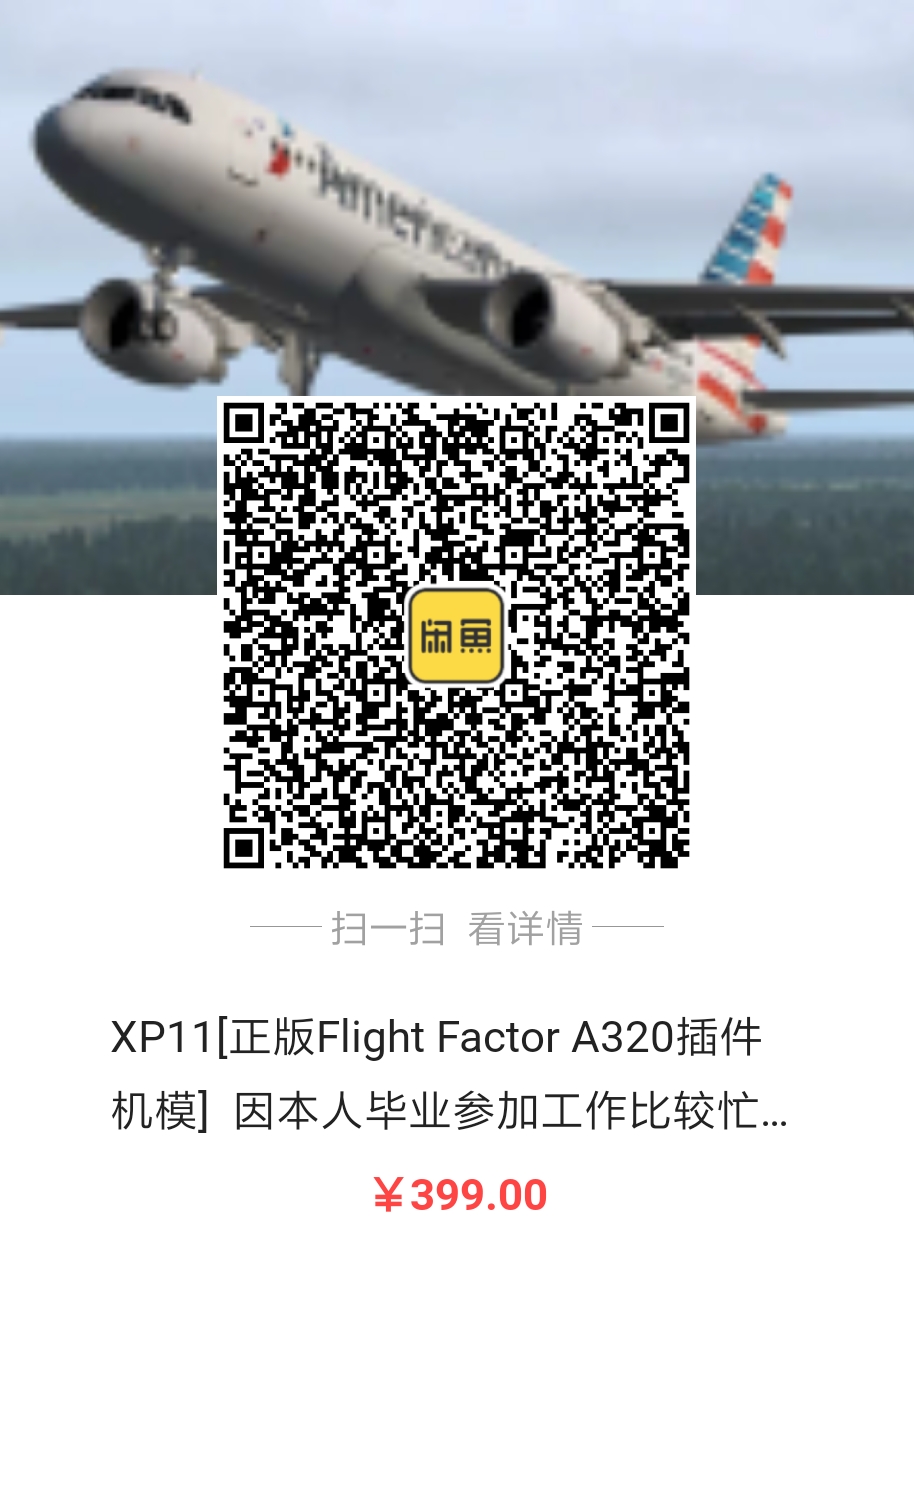 出售Flight Factor A320正版激活码，因毕业工作忙-114 